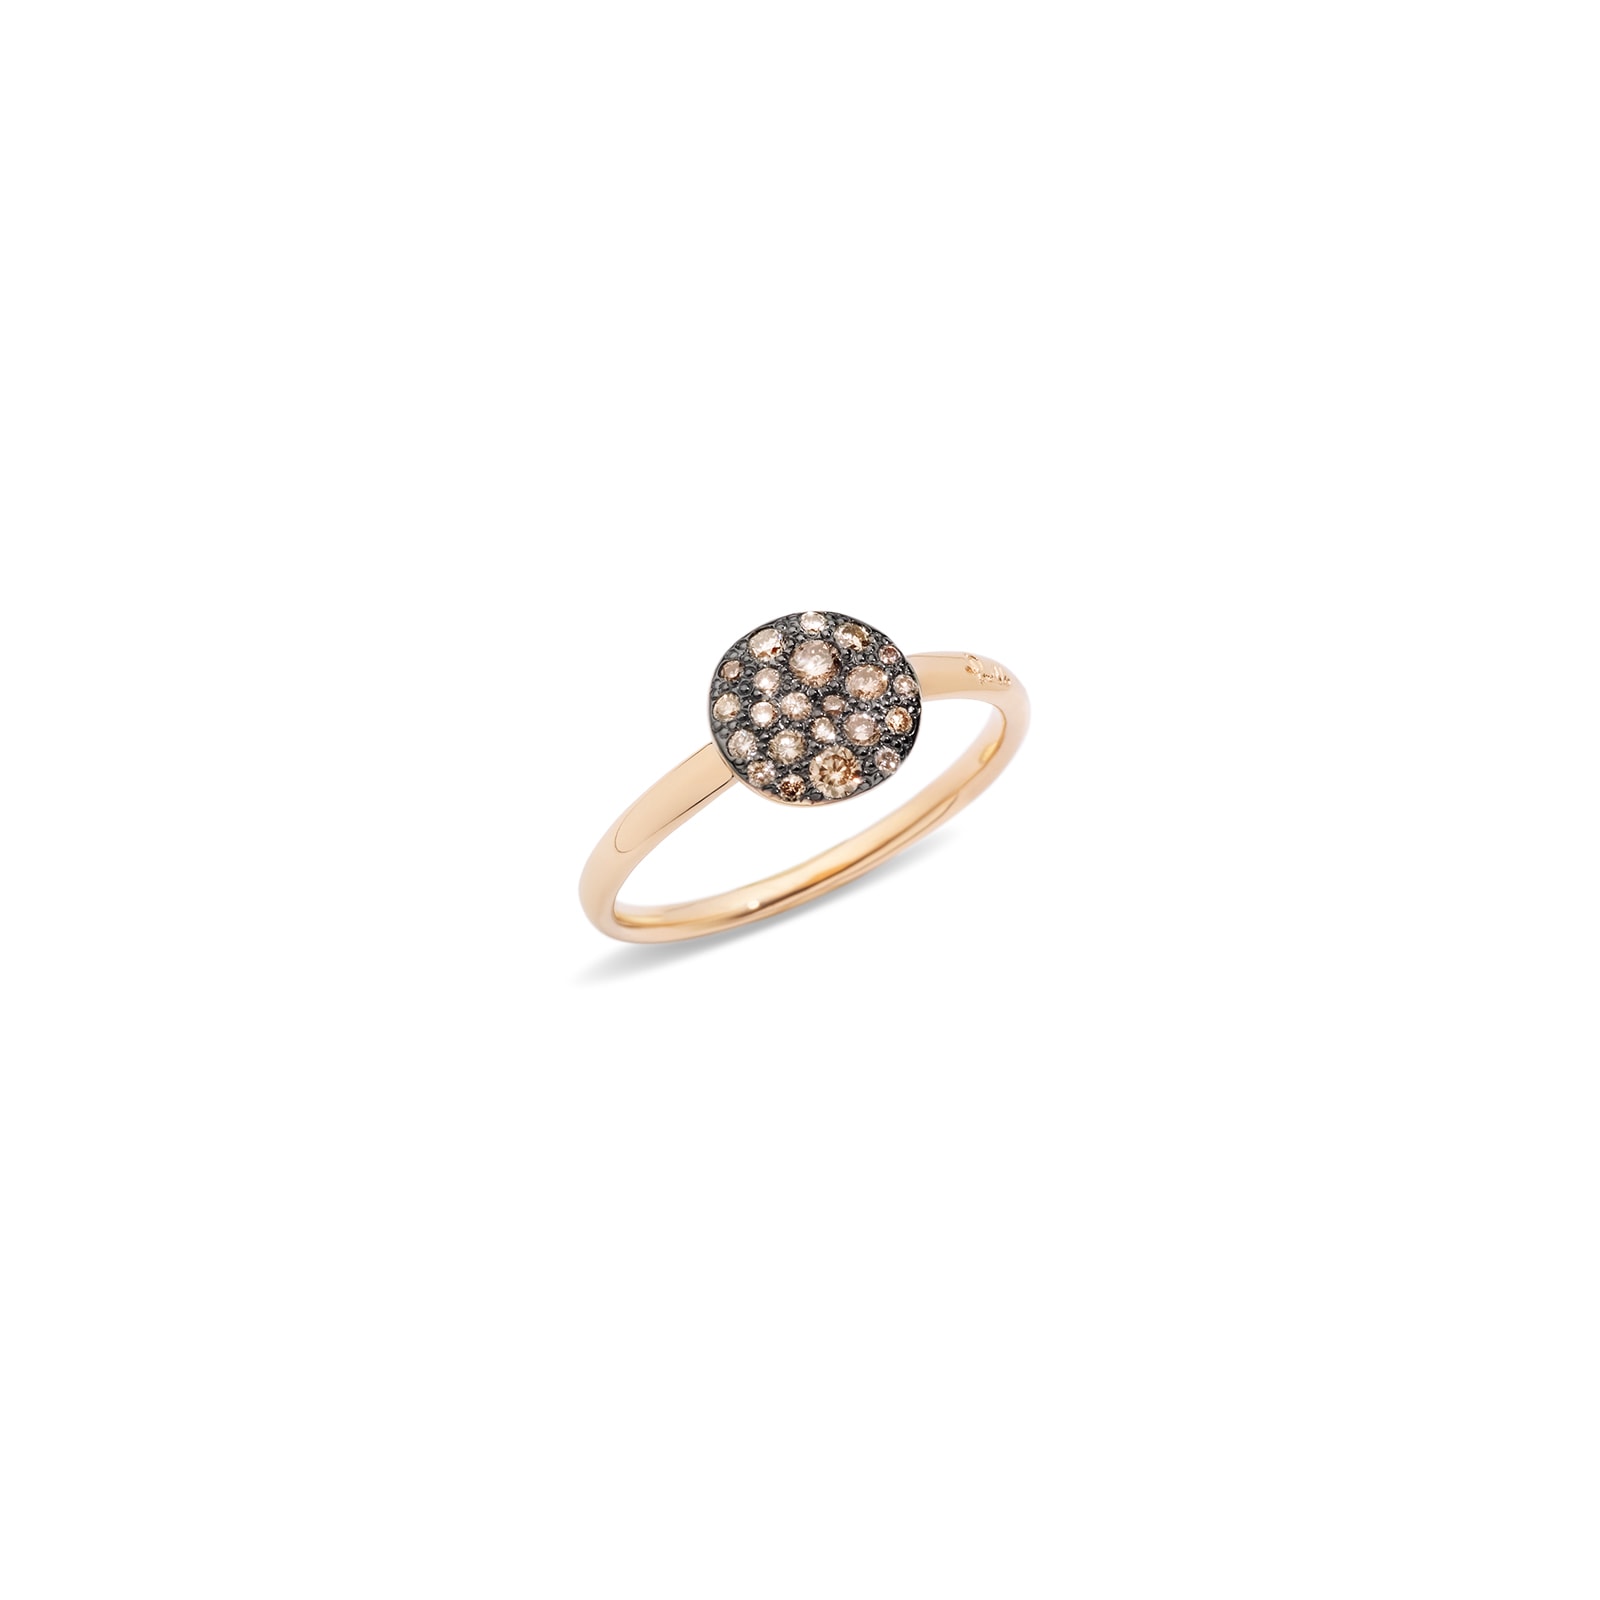 Sabbia 18ct Rose Gold 0.30ct Brushed Brown Diamond Ring - Ring Size O